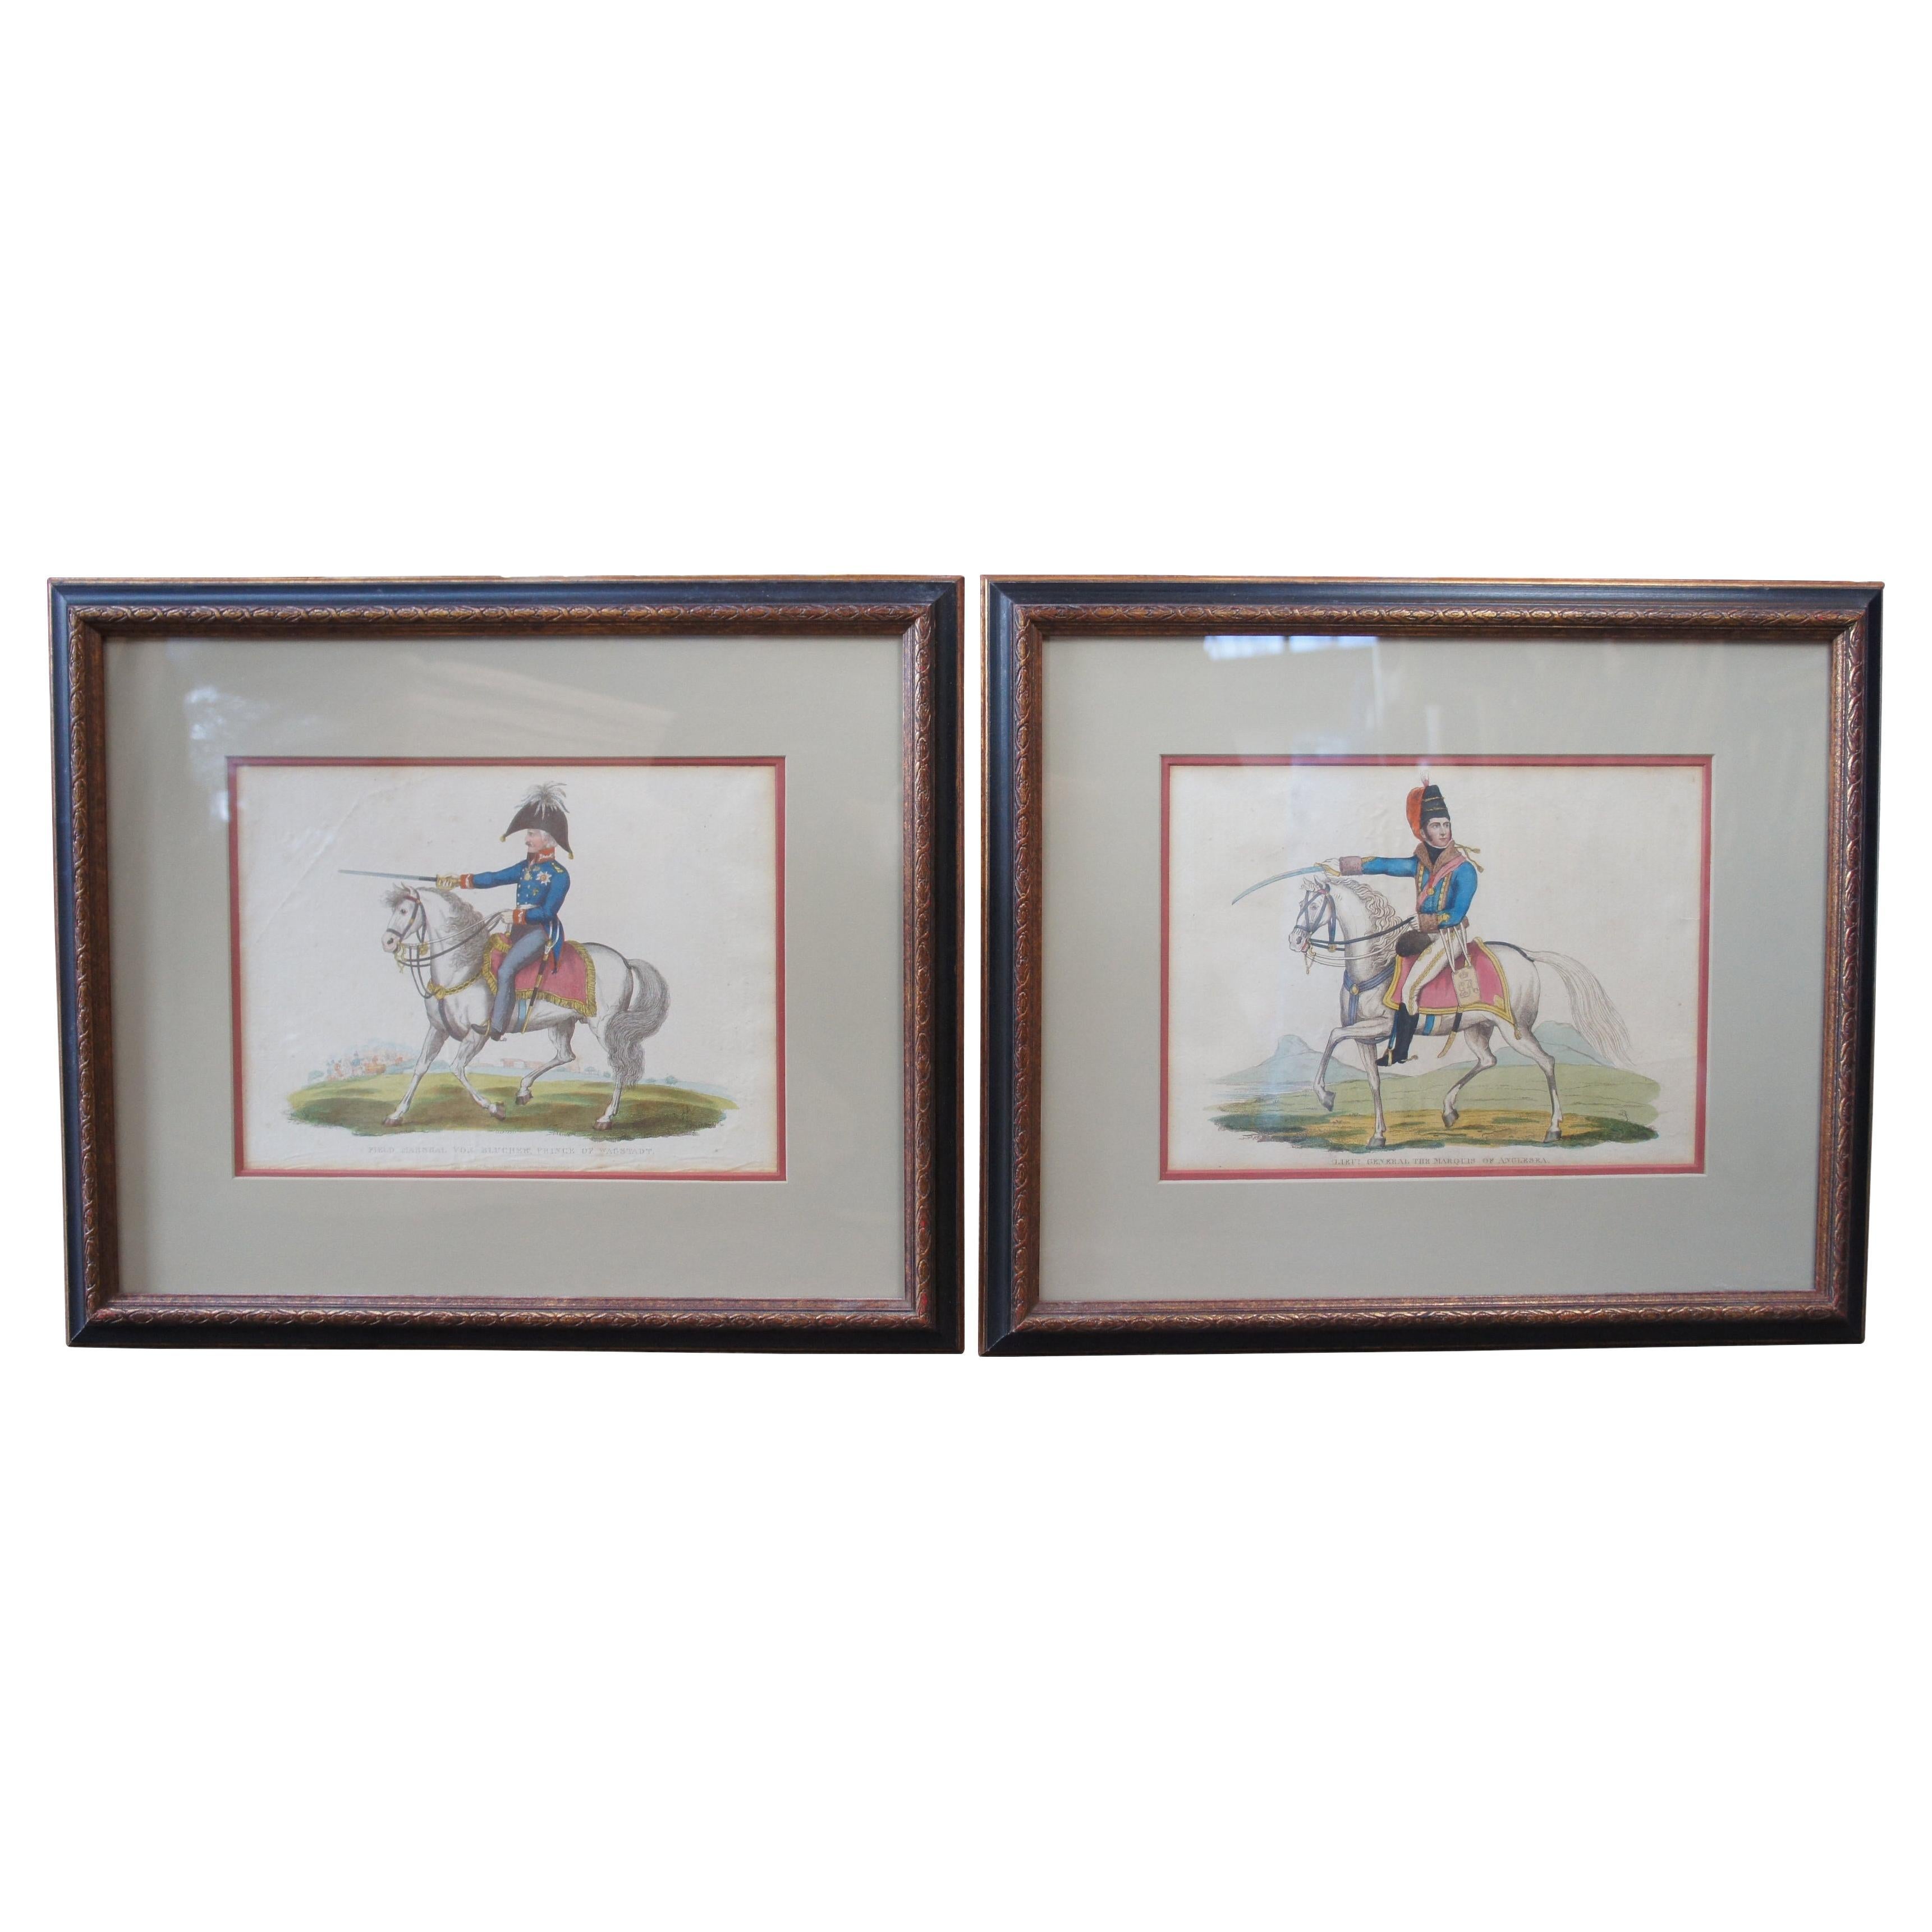 2 gravures anciennes de chevaux de guerre napoléoniens de Richard Evans datant de 1815, 20 po.